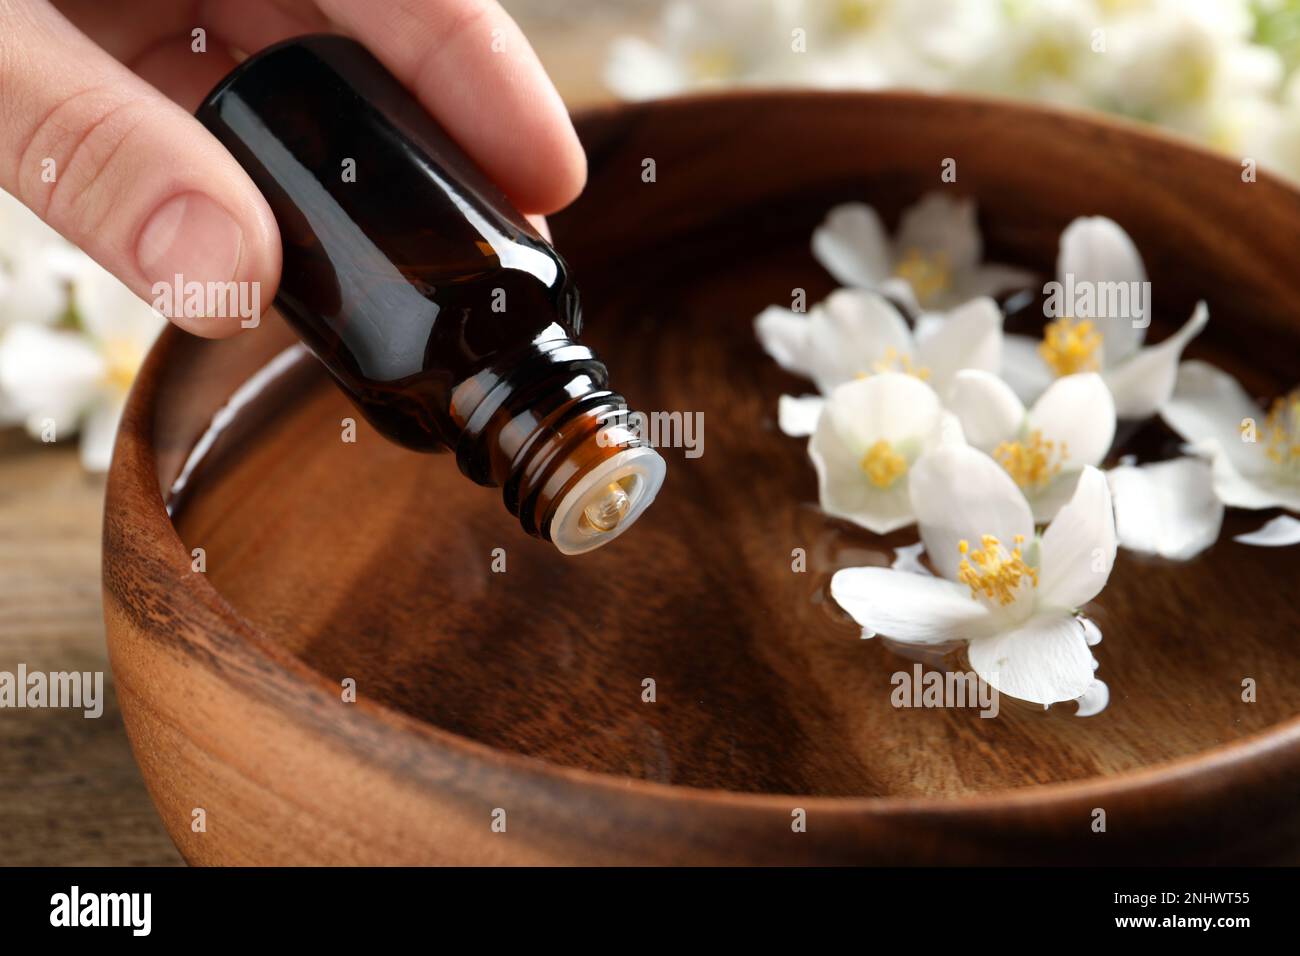 Eine Frau tropft ätherisches Jasminöl in eine Holzschüssel auf dem Tisch, Nahaufnahme Stockfoto